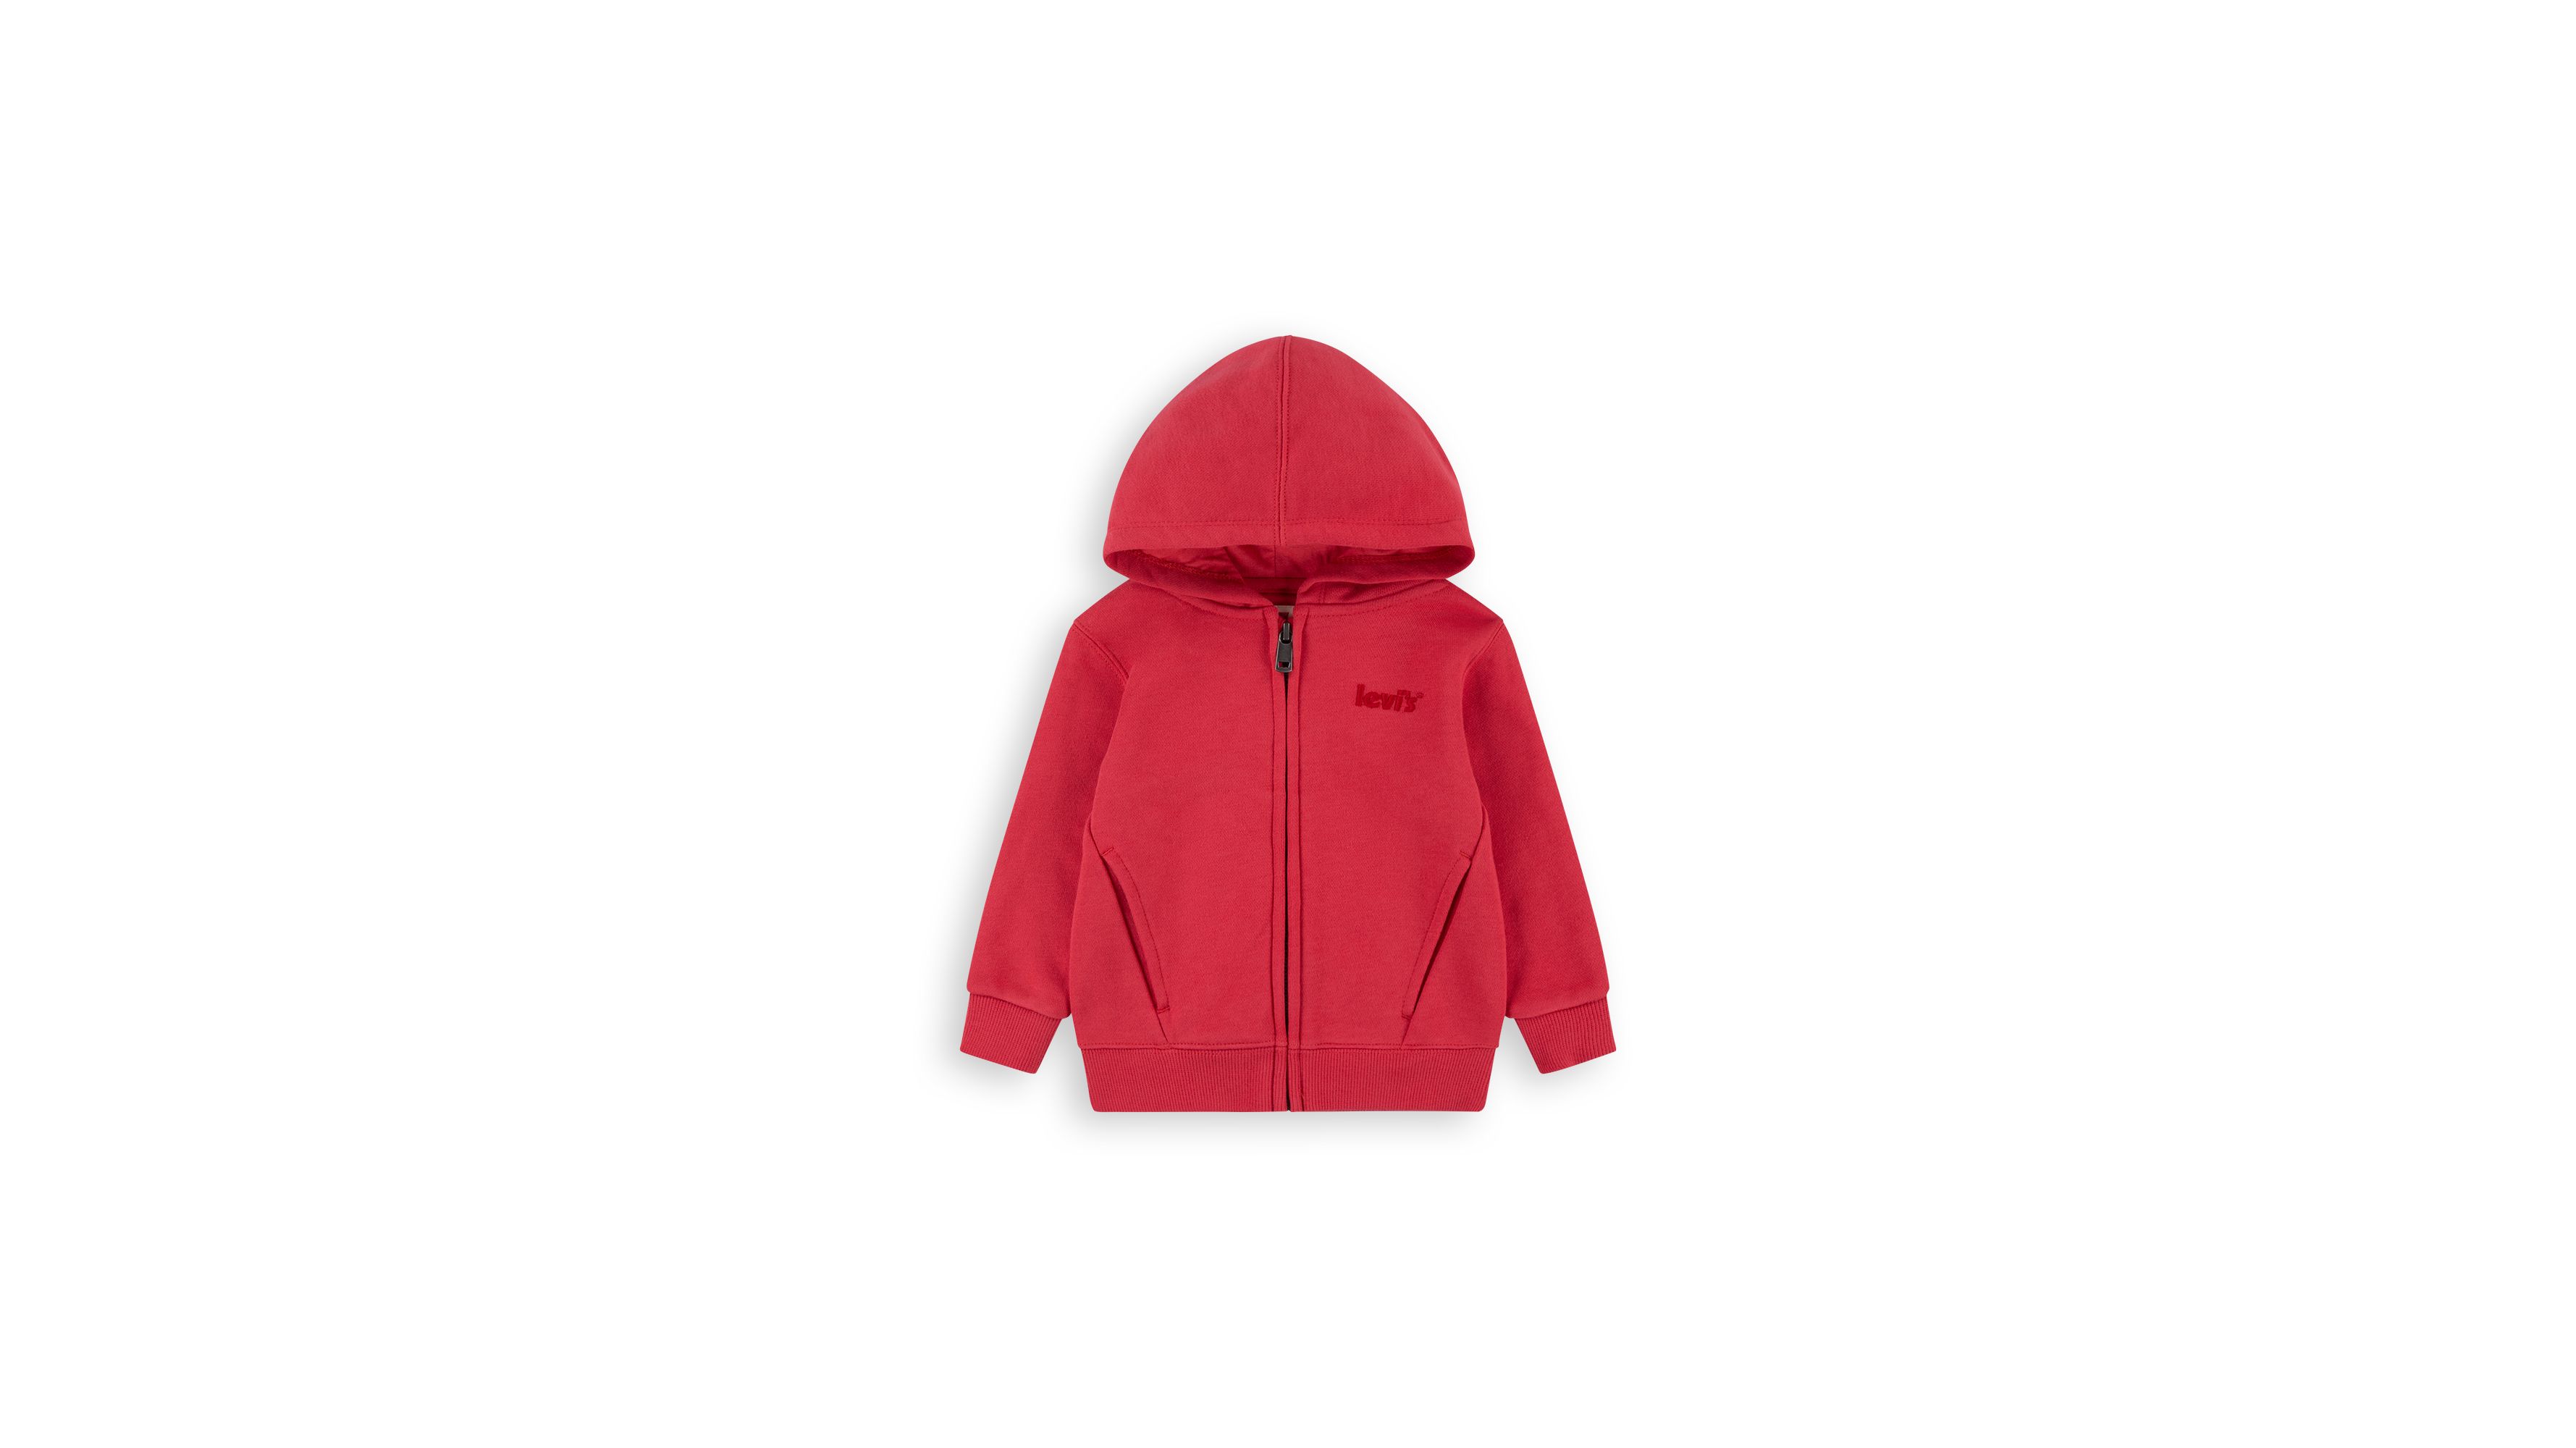 Sudadera con capucha, cremallera y logo, Rojo